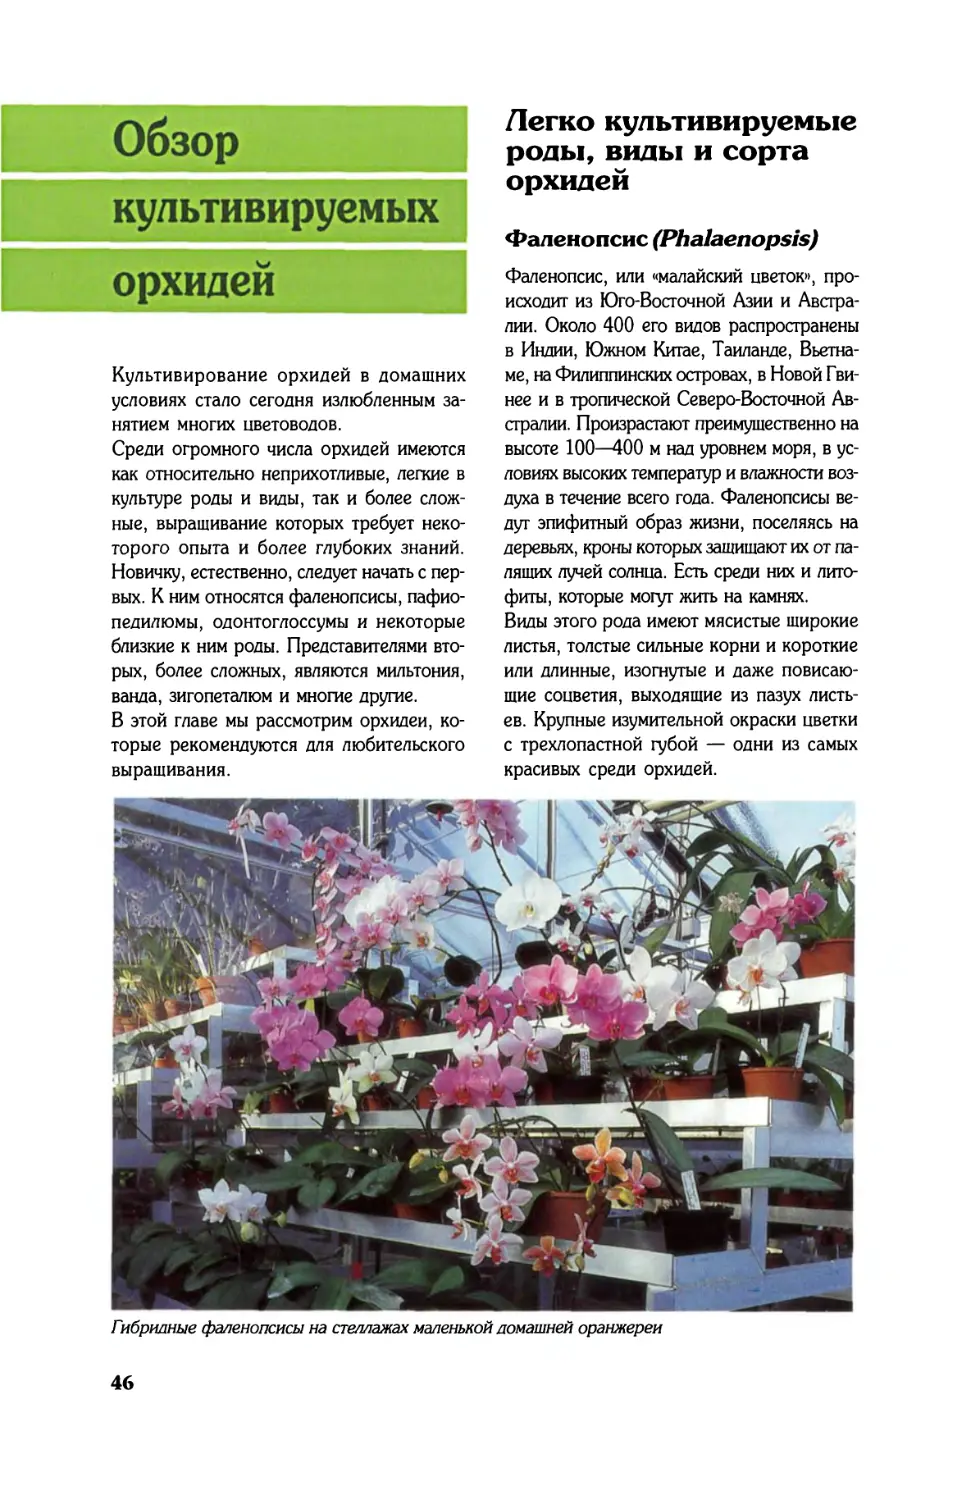 Обзор культивируемых орхидей
Легко культивируемые роды, виды и сорта орхидей